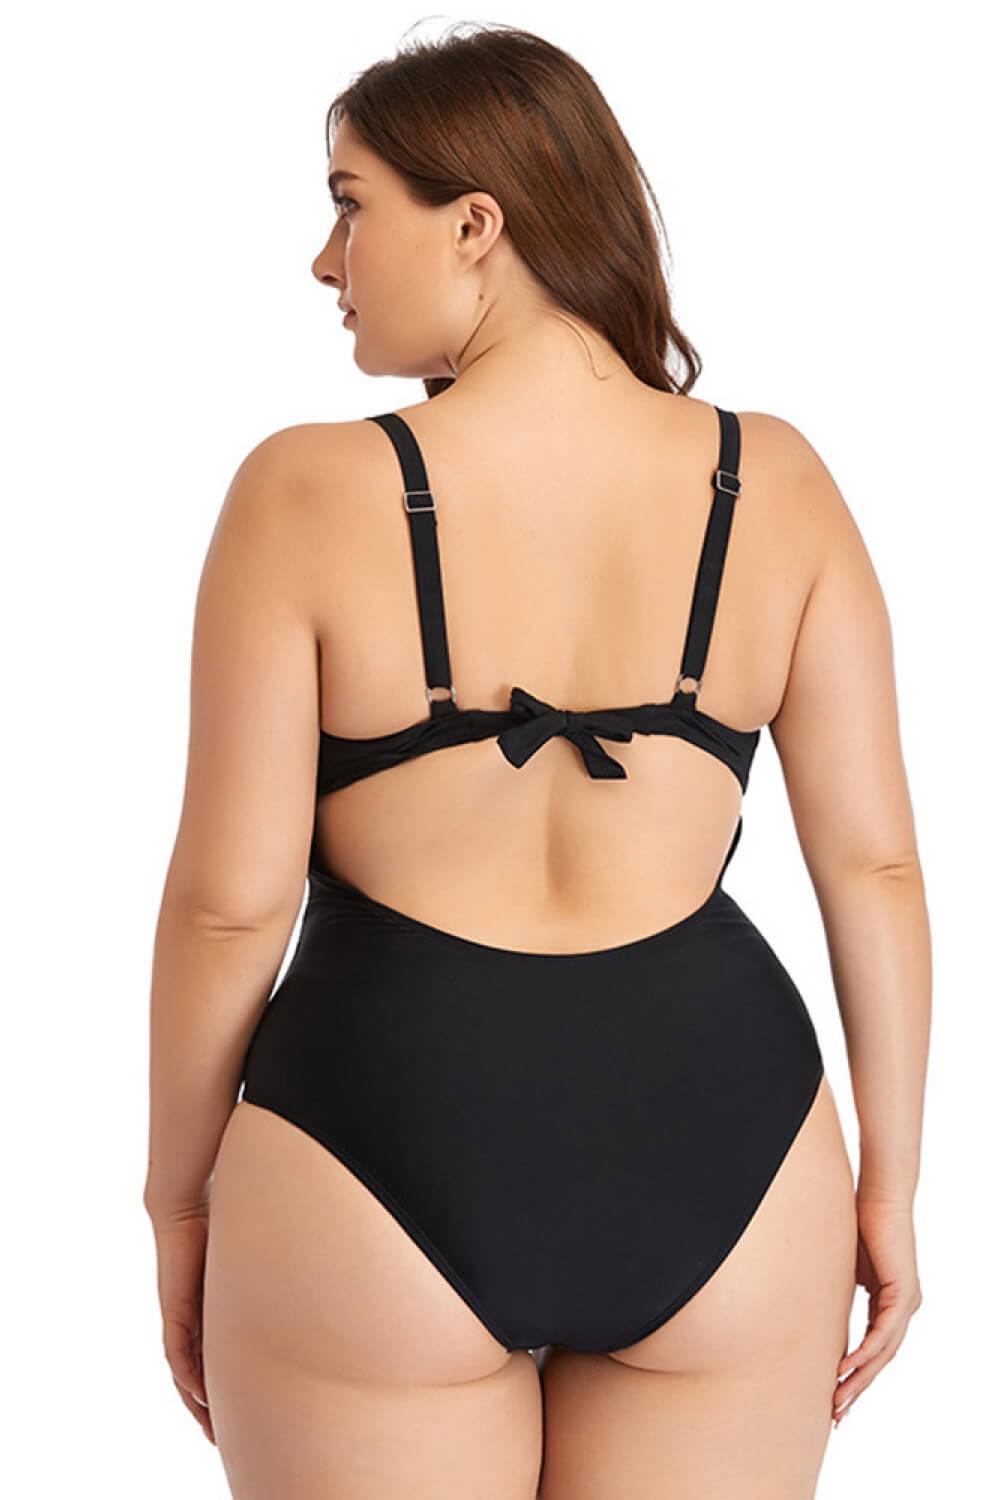 Women's Swimwear - Plus Sizes Plus Size Spliced Mesh Tie-Back One-Piece Swimsuit